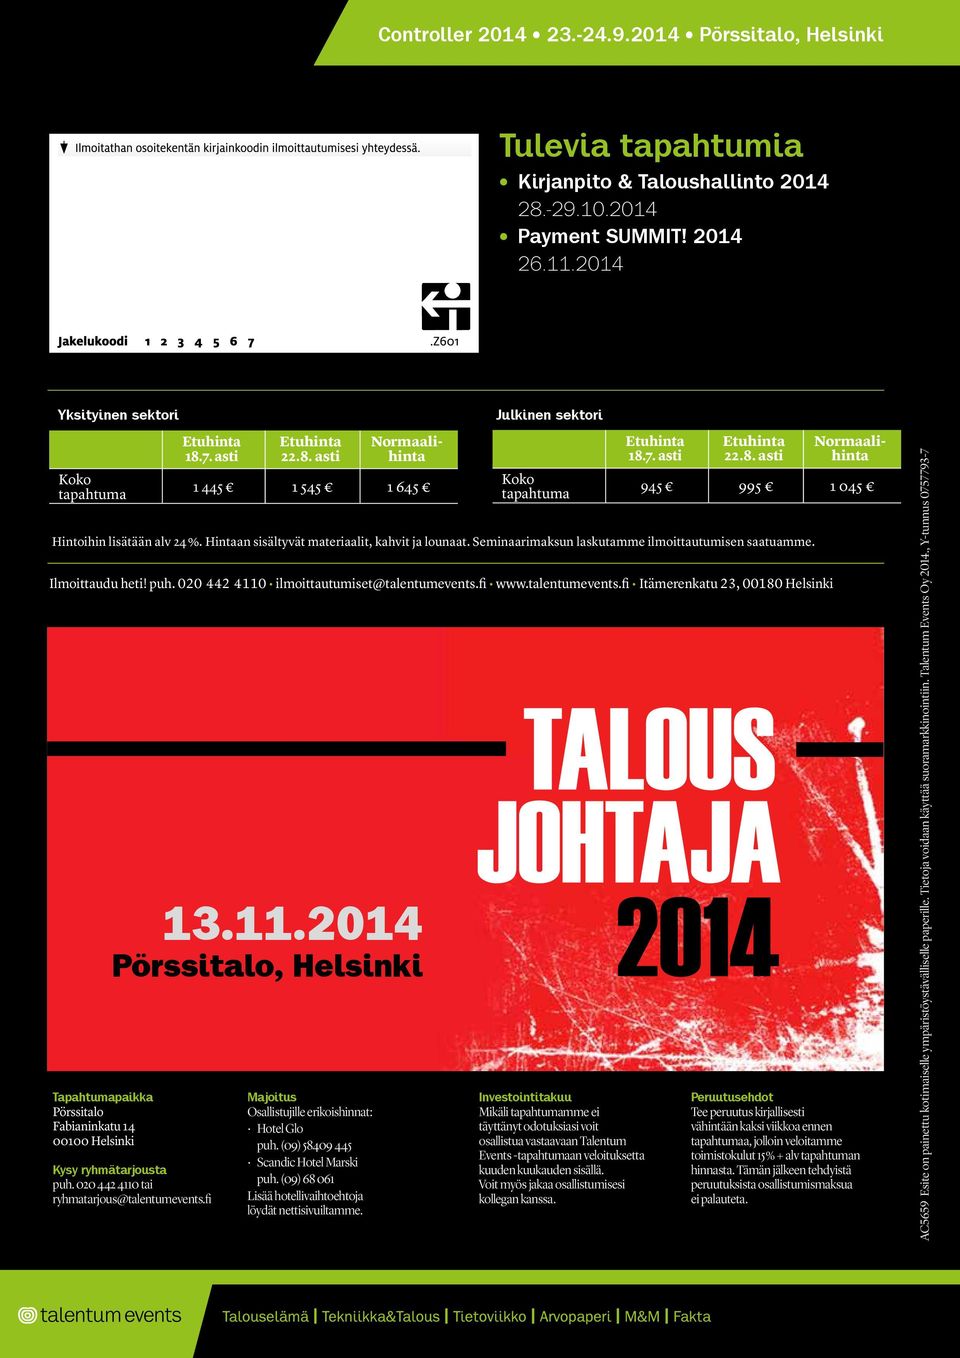 fi www.talentumevents.fi Itämerenkatu 23, 00180 Helsinki Kysy ryhmätarjousta puh. 020 442 4110 tai ryhmatarjous@talentumevents.fi 22.8. asti Majoitus Osallistujille erikoishinnat: Hotel Glo puh.